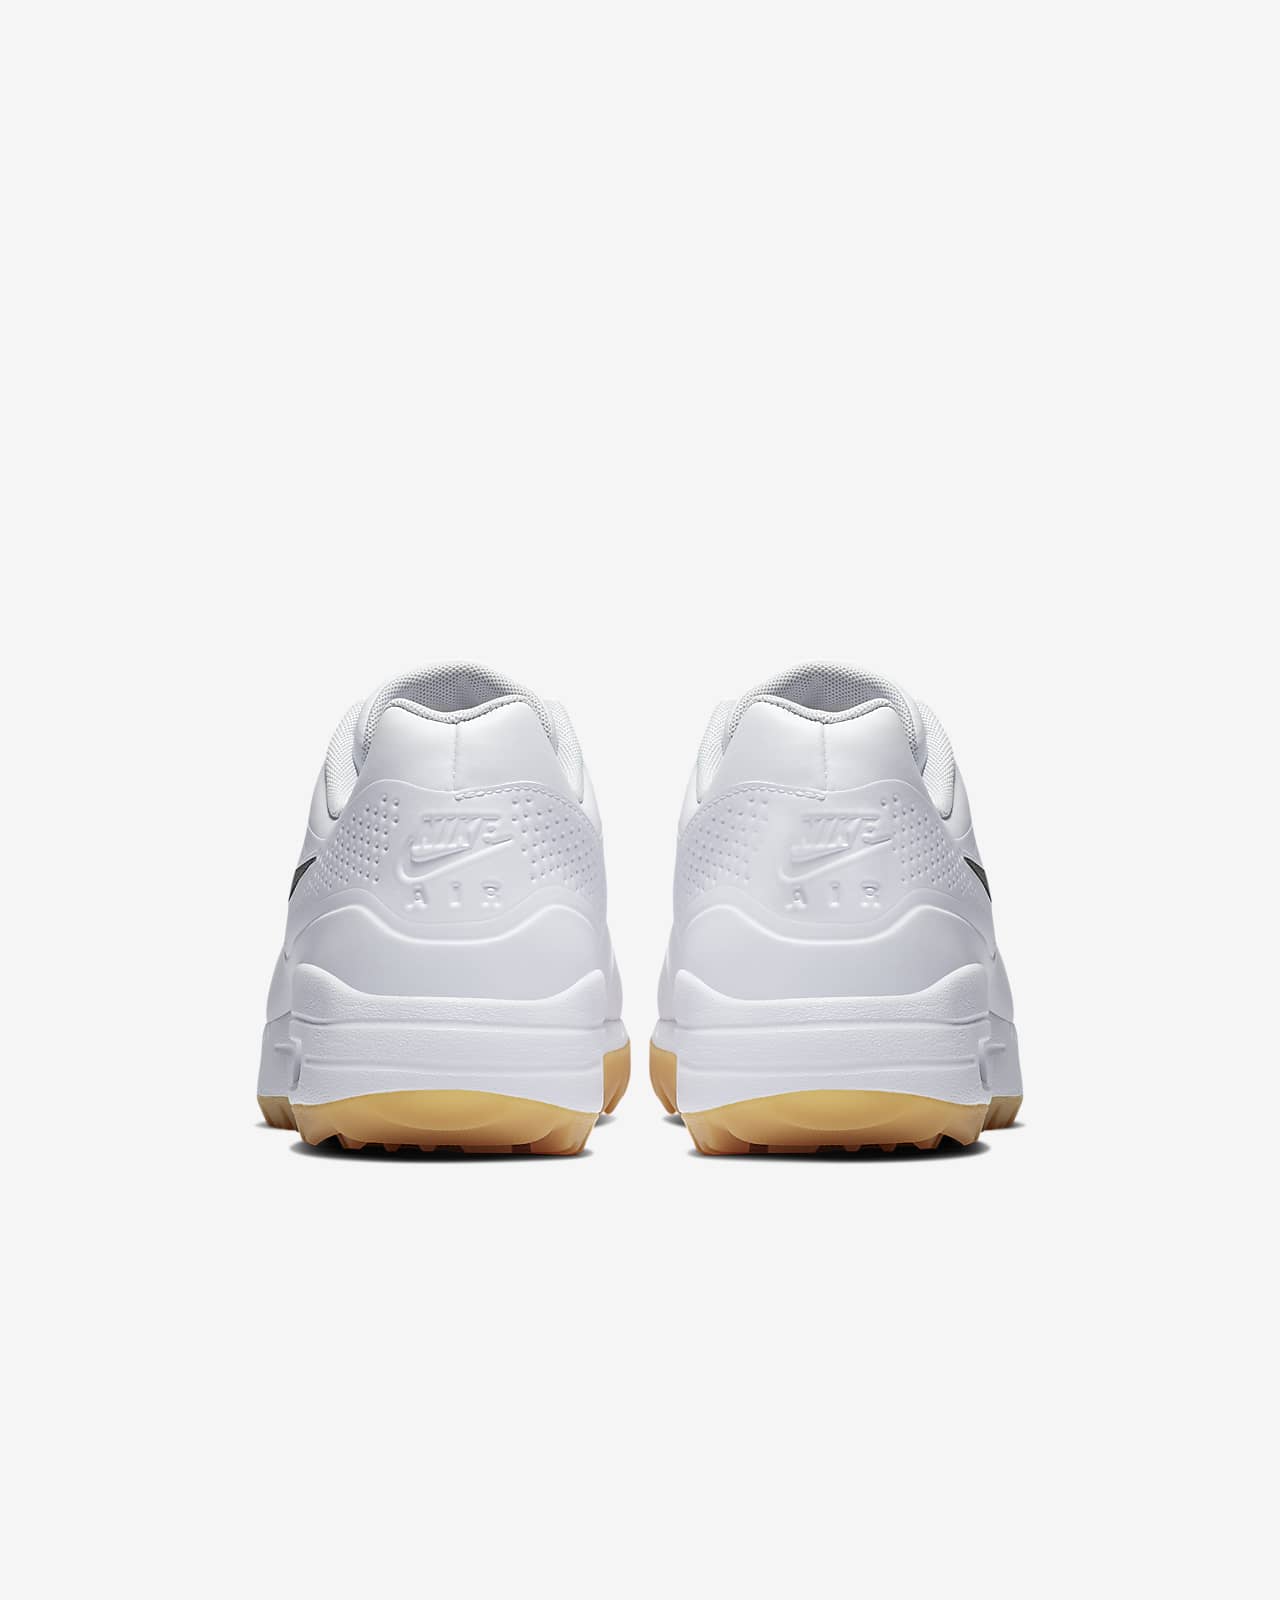 nike air max 1g golf shoes white gum